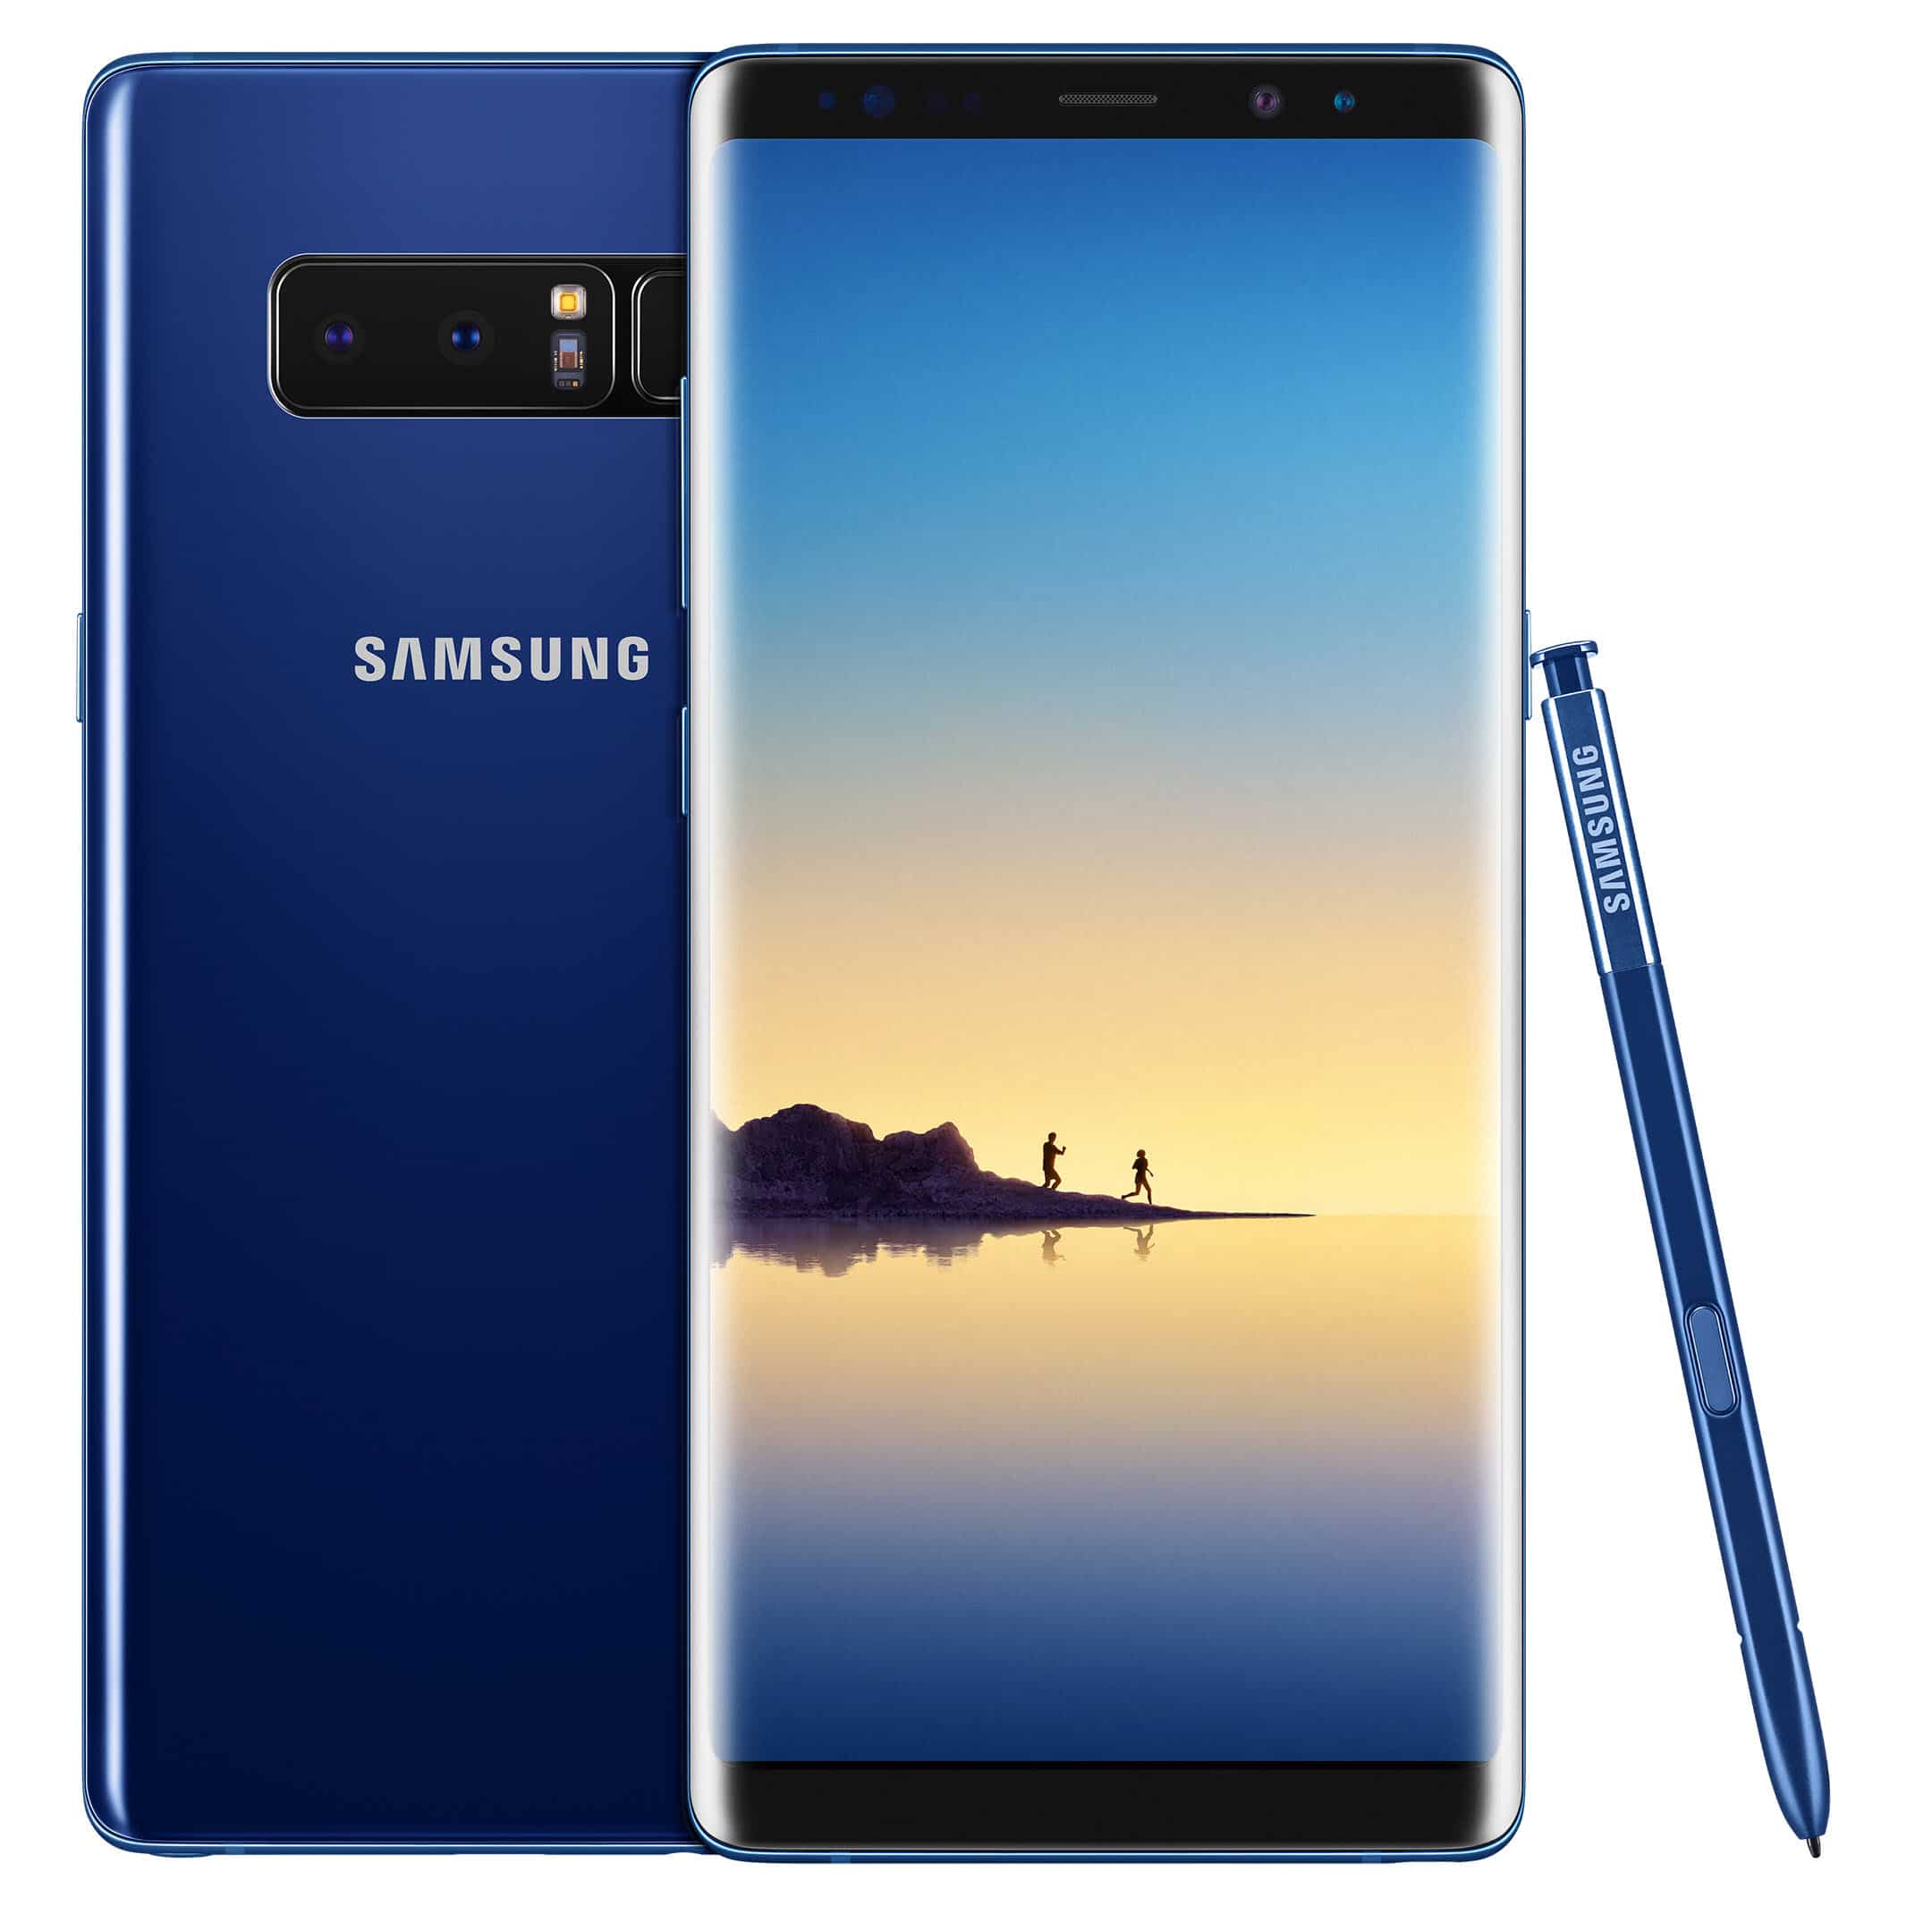 Opinión: Vale la pena comprar un Samsung Galaxy?